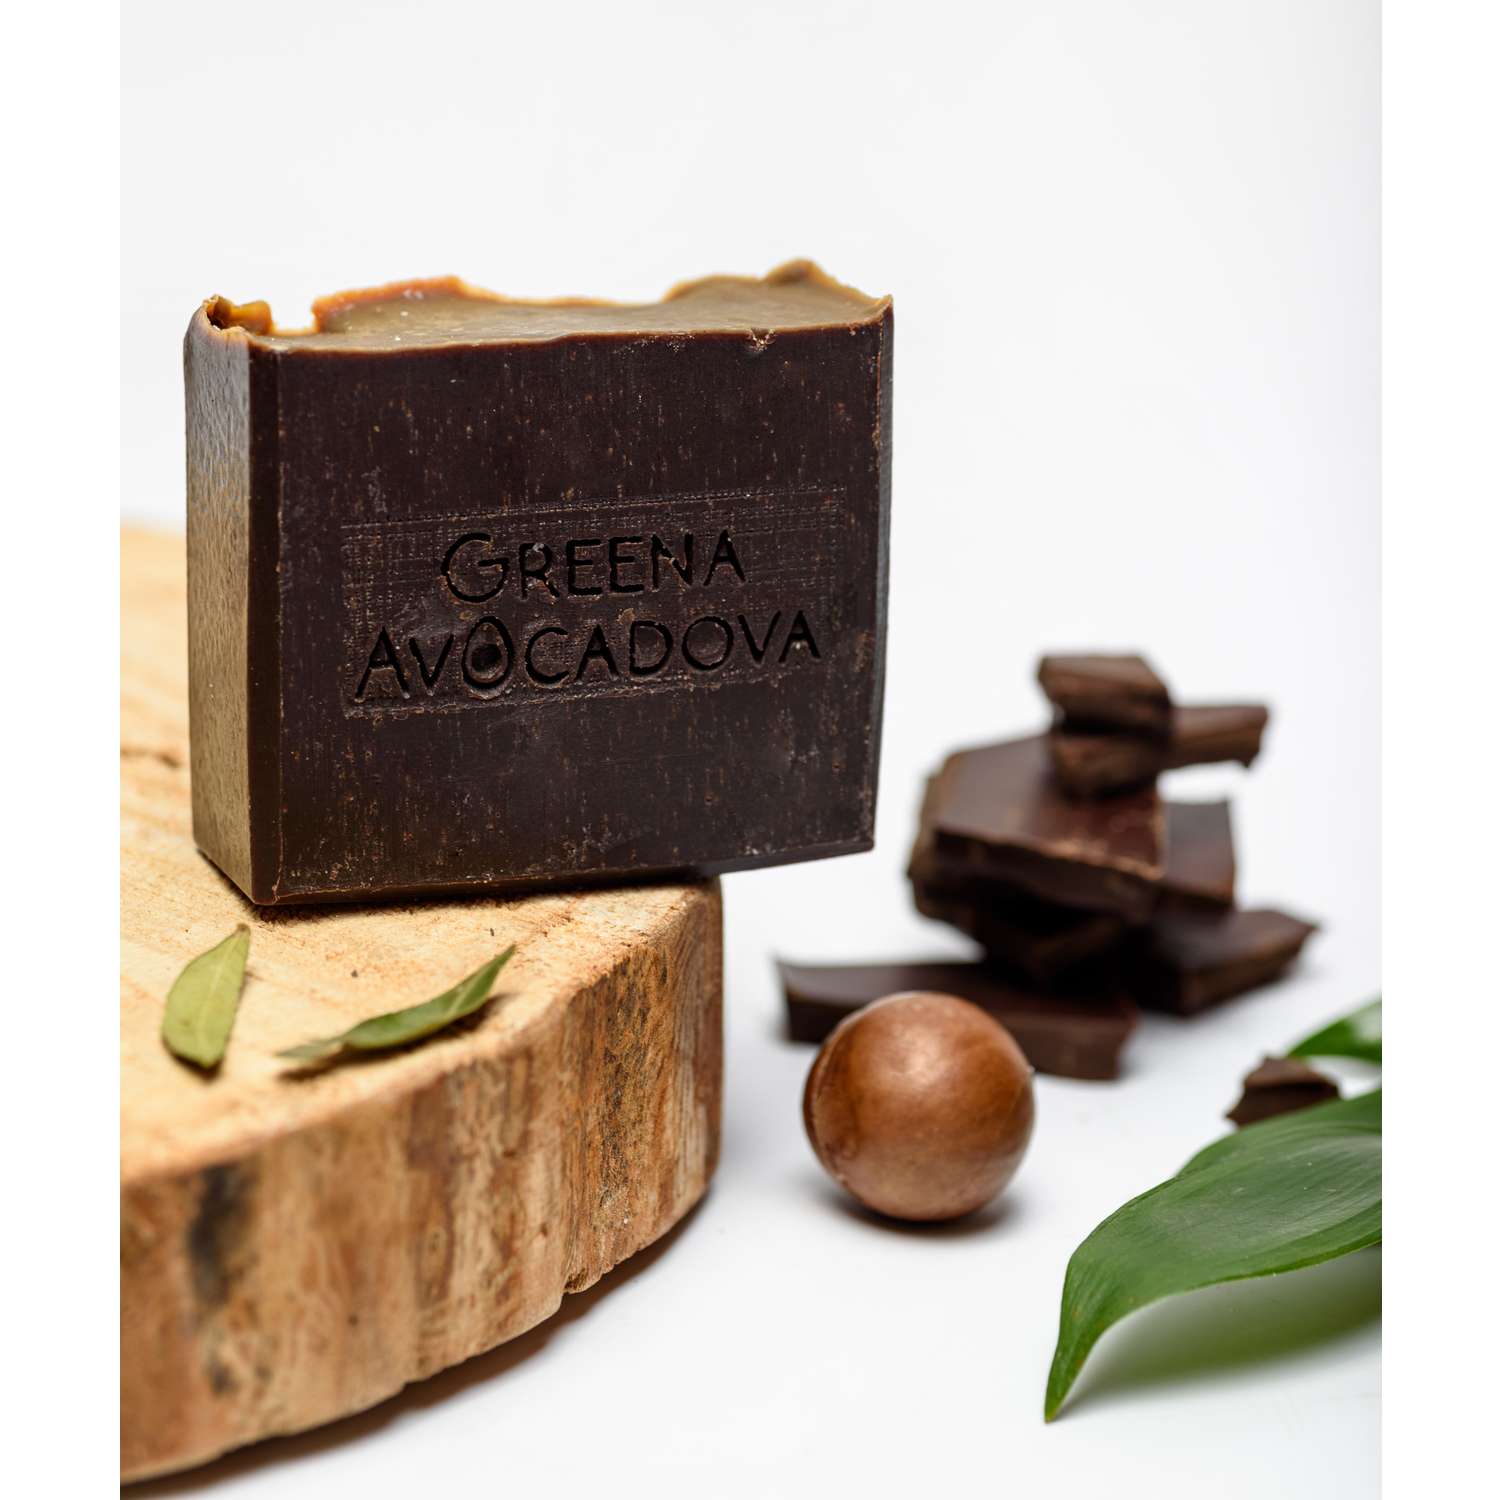 Натурально мыло ручной работы Greena Avocadova шоколад - фото 4